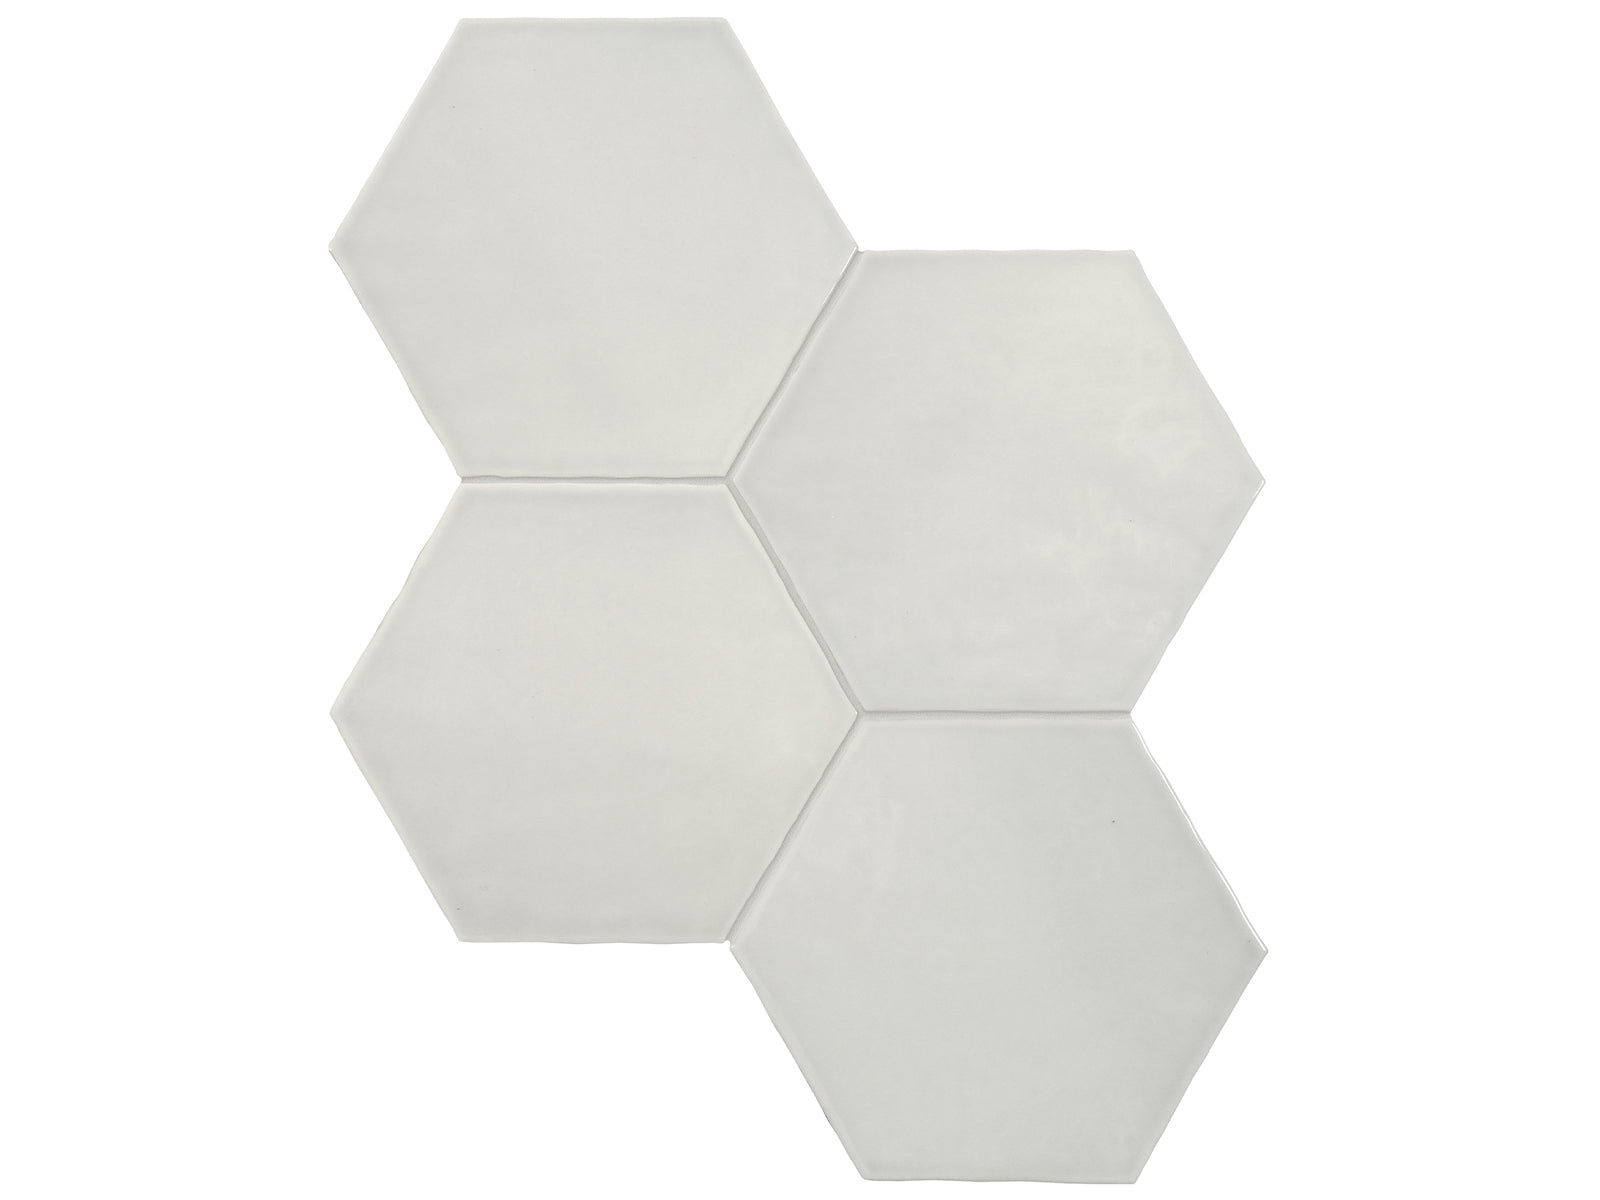 6 in Teramoda Stone Hexagon Glossy Pressed Glazed Ceramic Tile